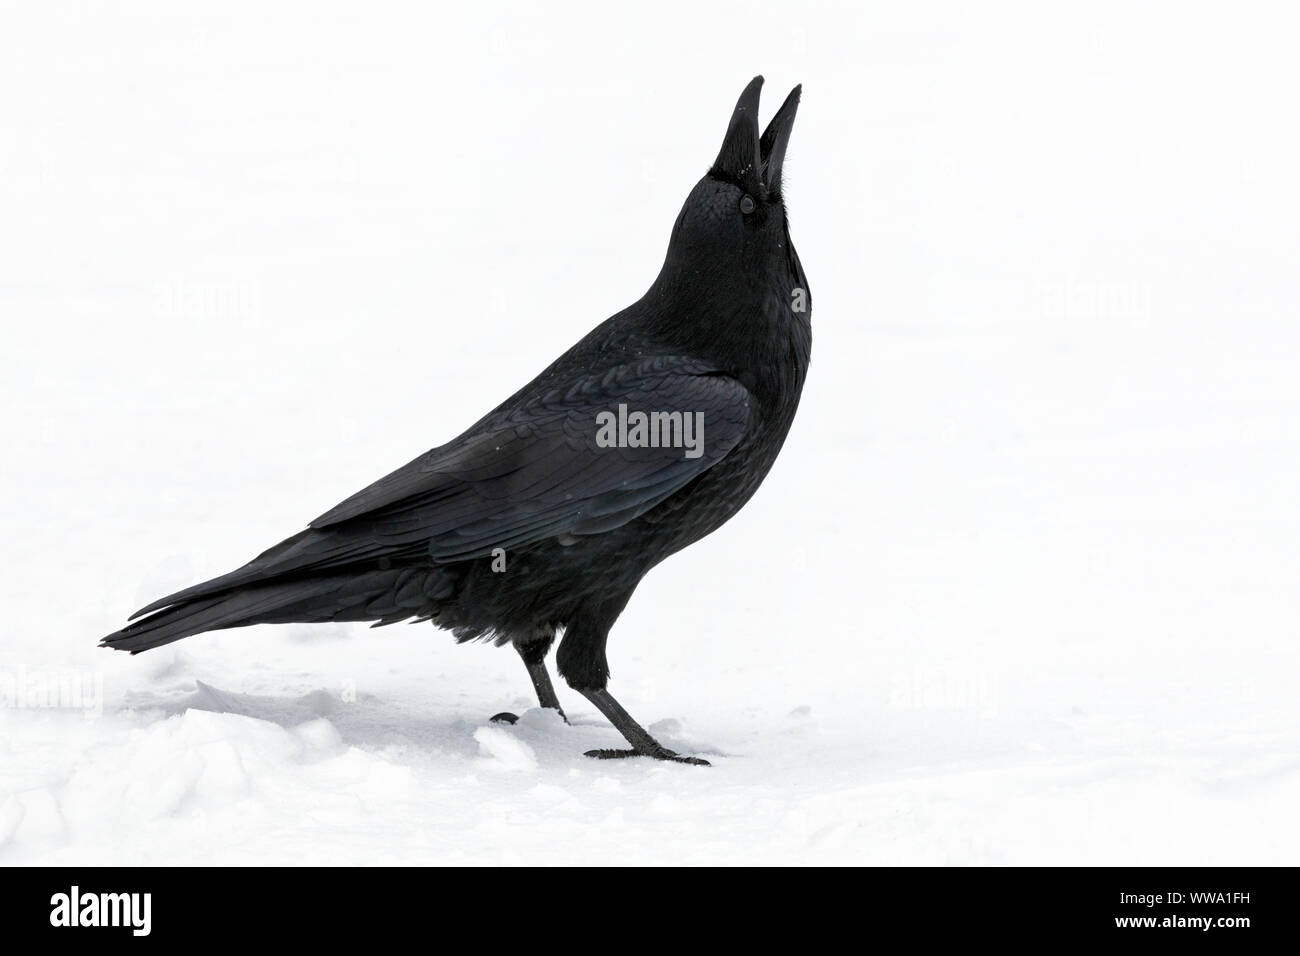 Grand corbeau, Corvus corax, un seul des oiseaux adultes se tenait dans la neige durant une averse de neige Flocons de neige capture, Jasper, Canada, Novembre Banque D'Images